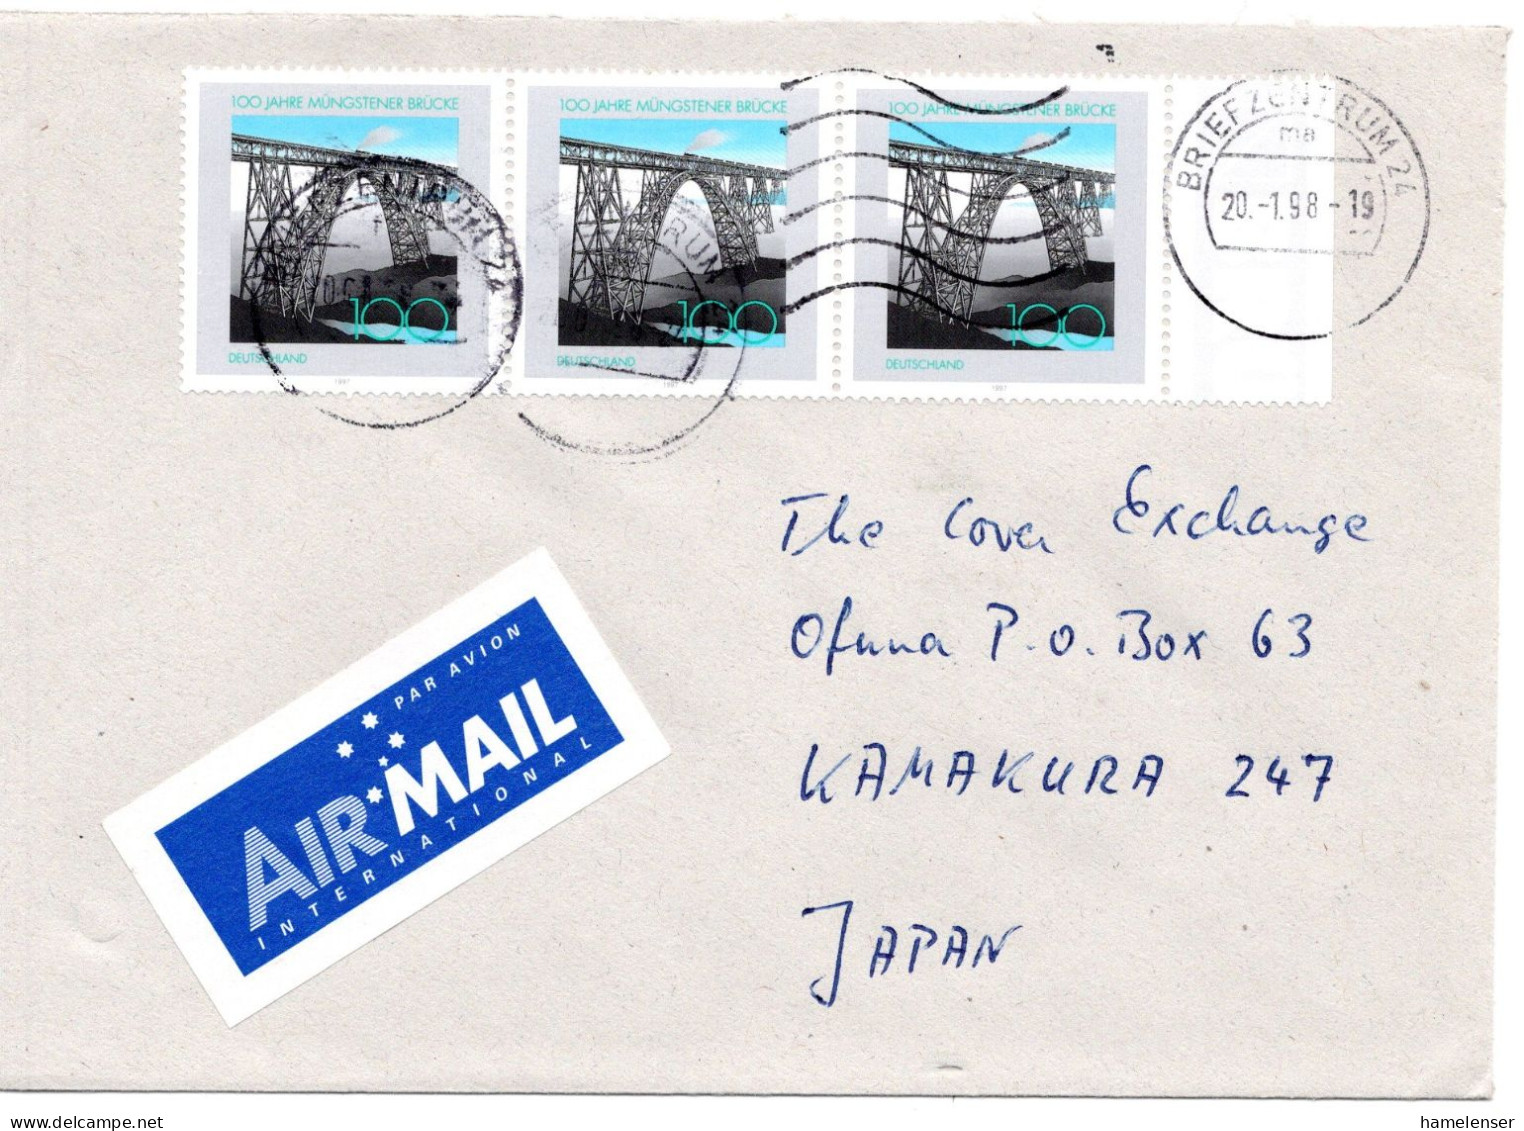 66278 - Bund - 1998 - 3@100Pfg Muengstener Bruecke A LpBf BRIEFZENTRUM 24 -> Japan - Storia Postale